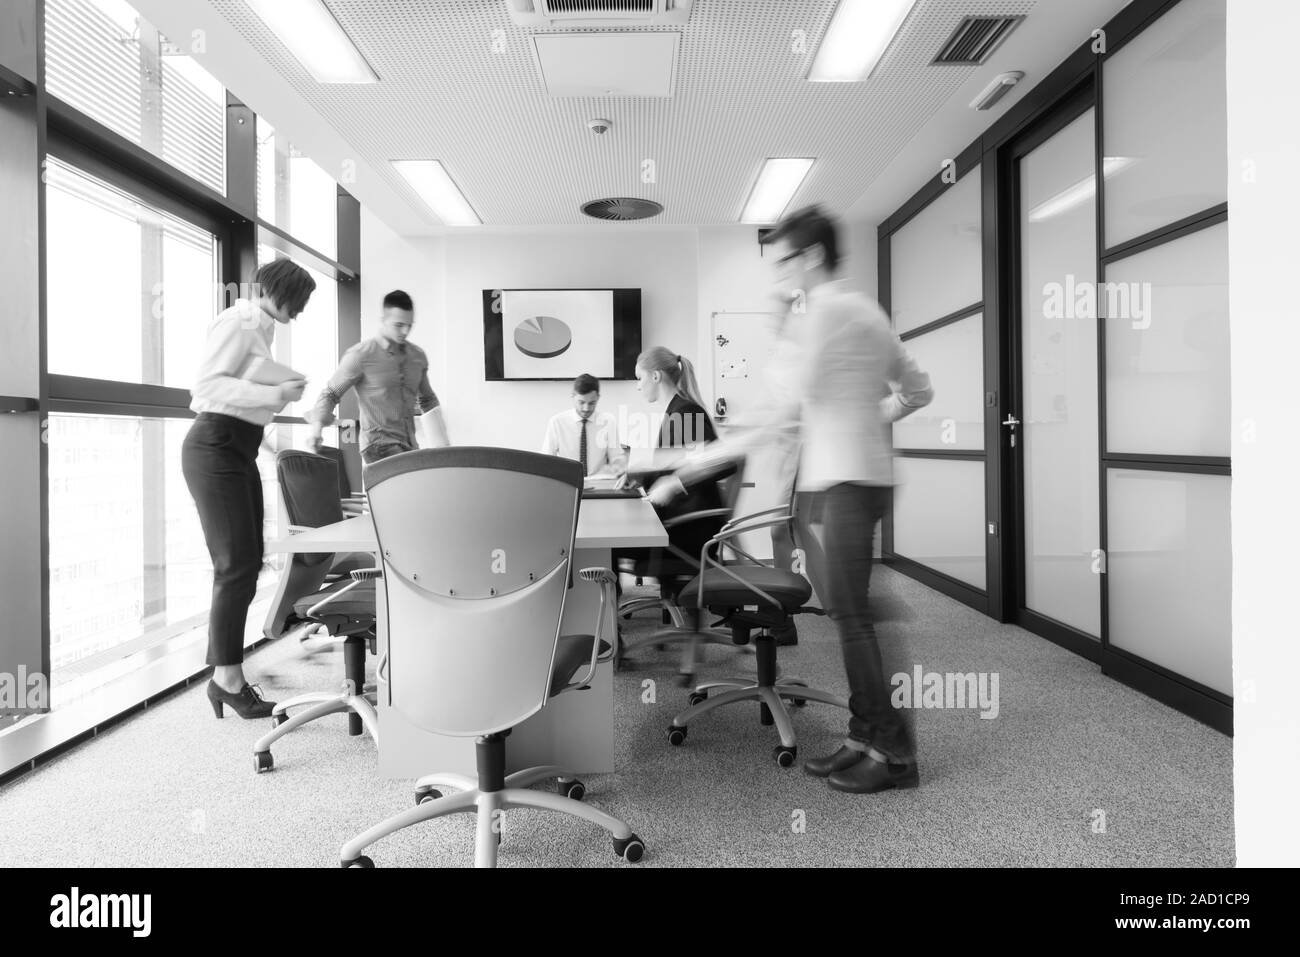 Les gens d'affaires groupe dans une salle de réunion le motion blur Banque D'Images